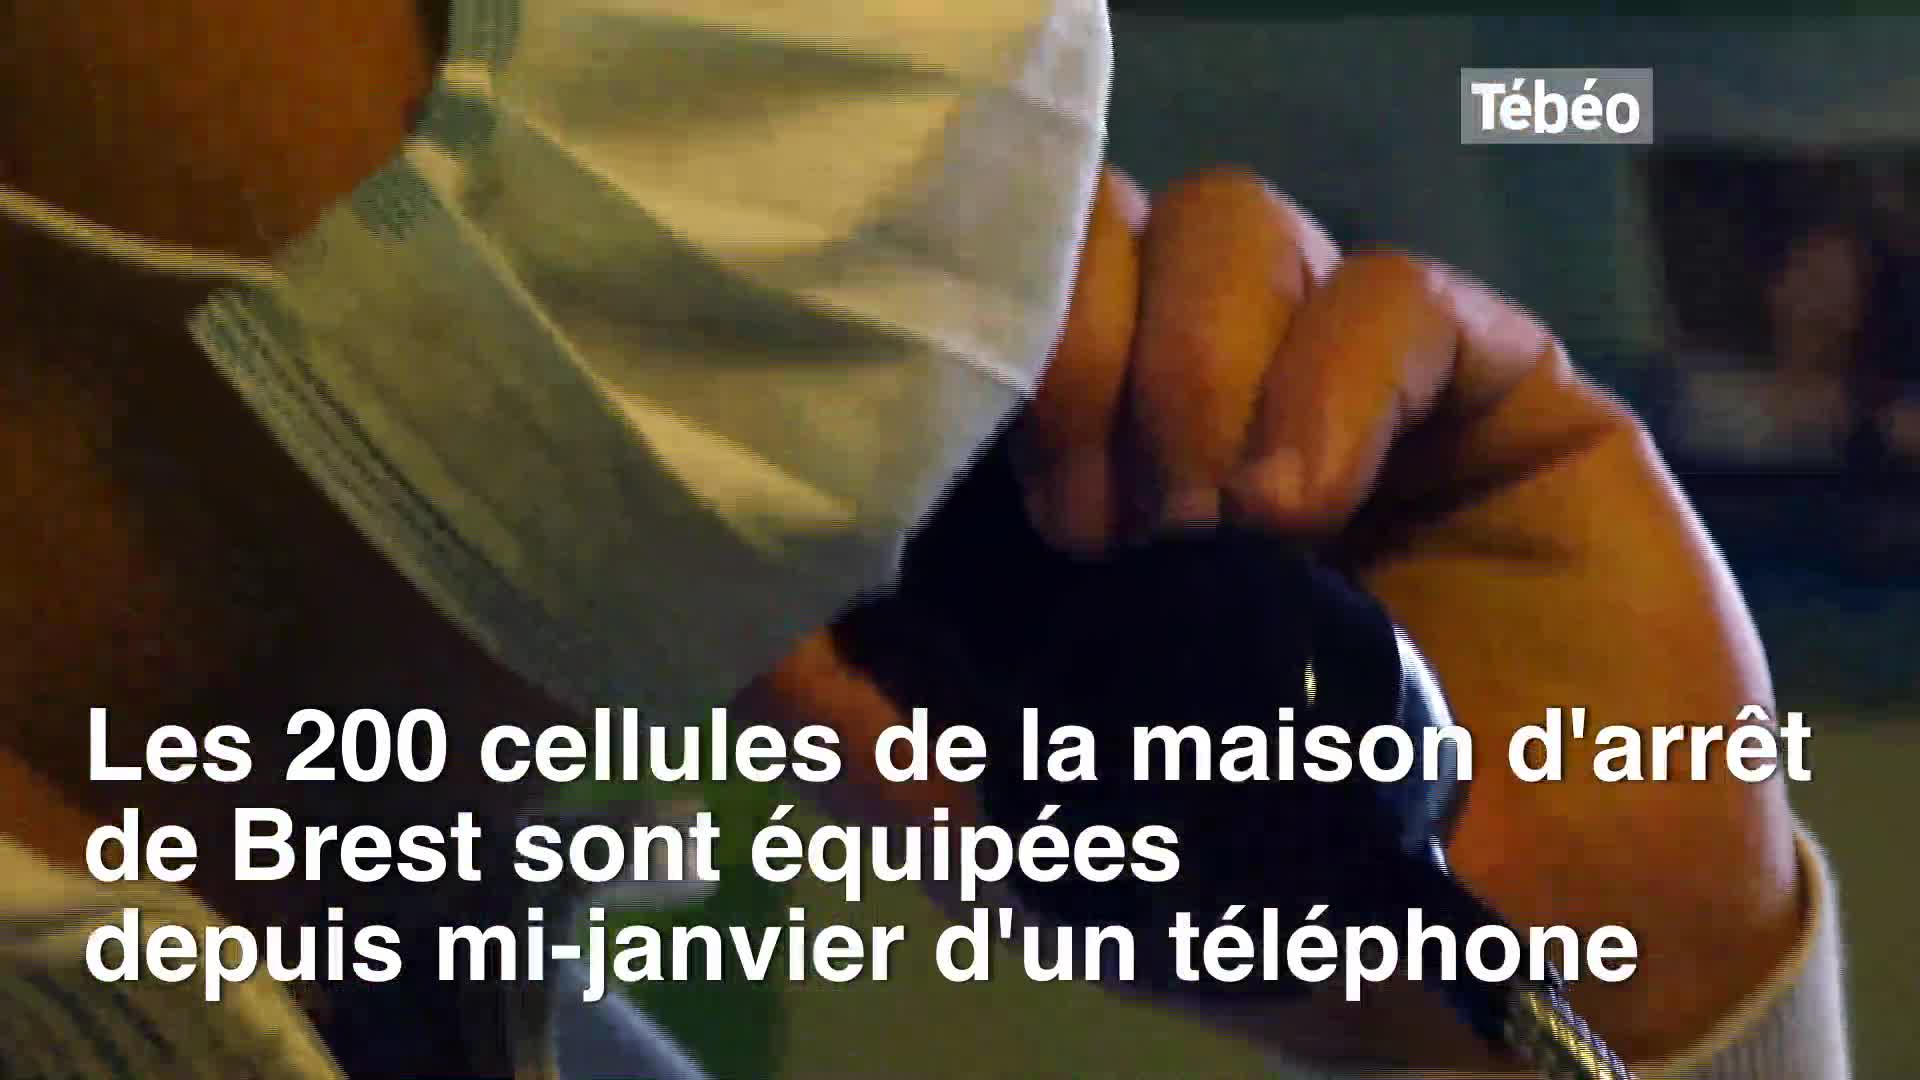 "Allo, c'est la prison" Des téléphones dans les cellules de la prison de Brest (Tébéo-TébéSud)